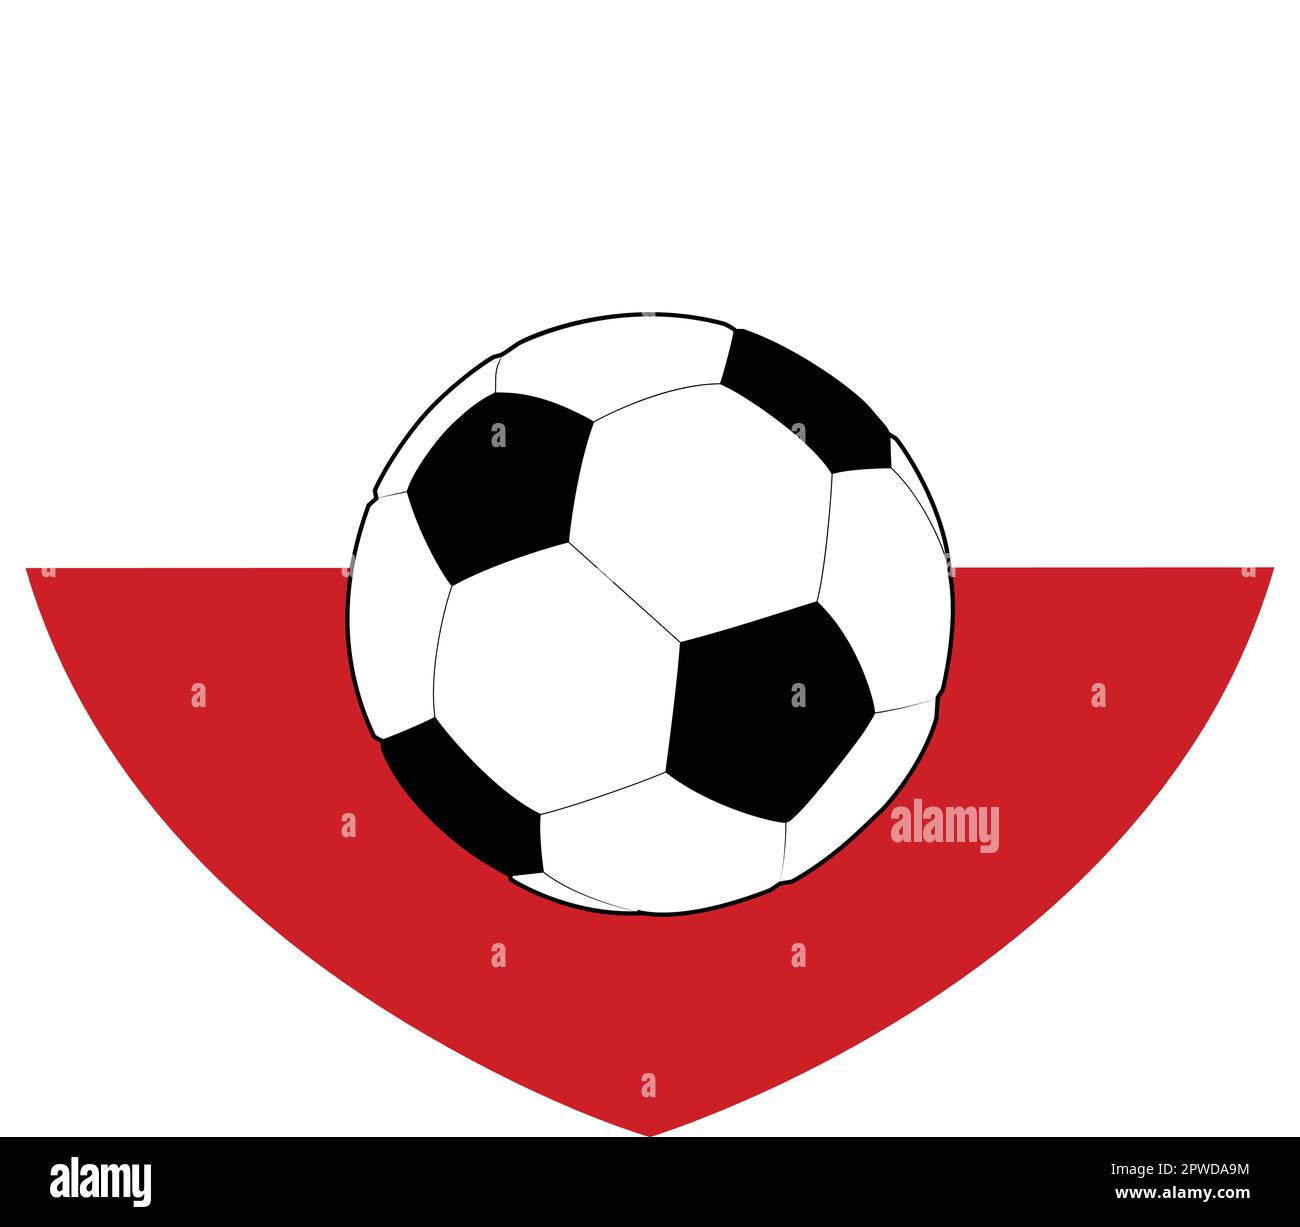 Pologne drapeau polonais football coeur Illustration de Vecteur